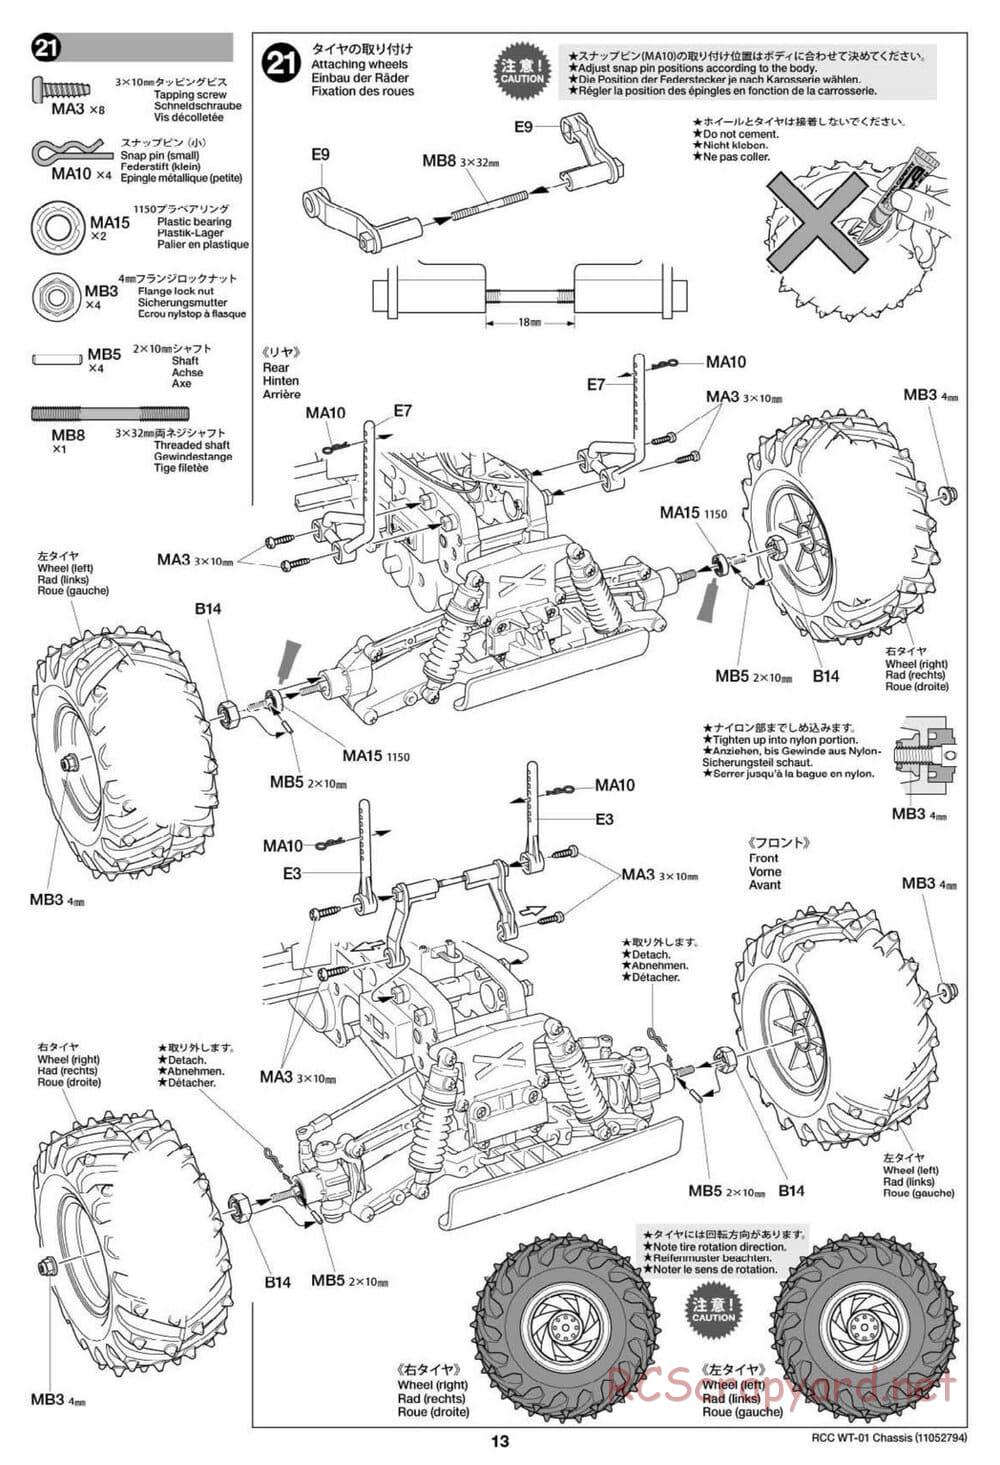 Tamiya - WT-01 Chassis - Manual - Page 13